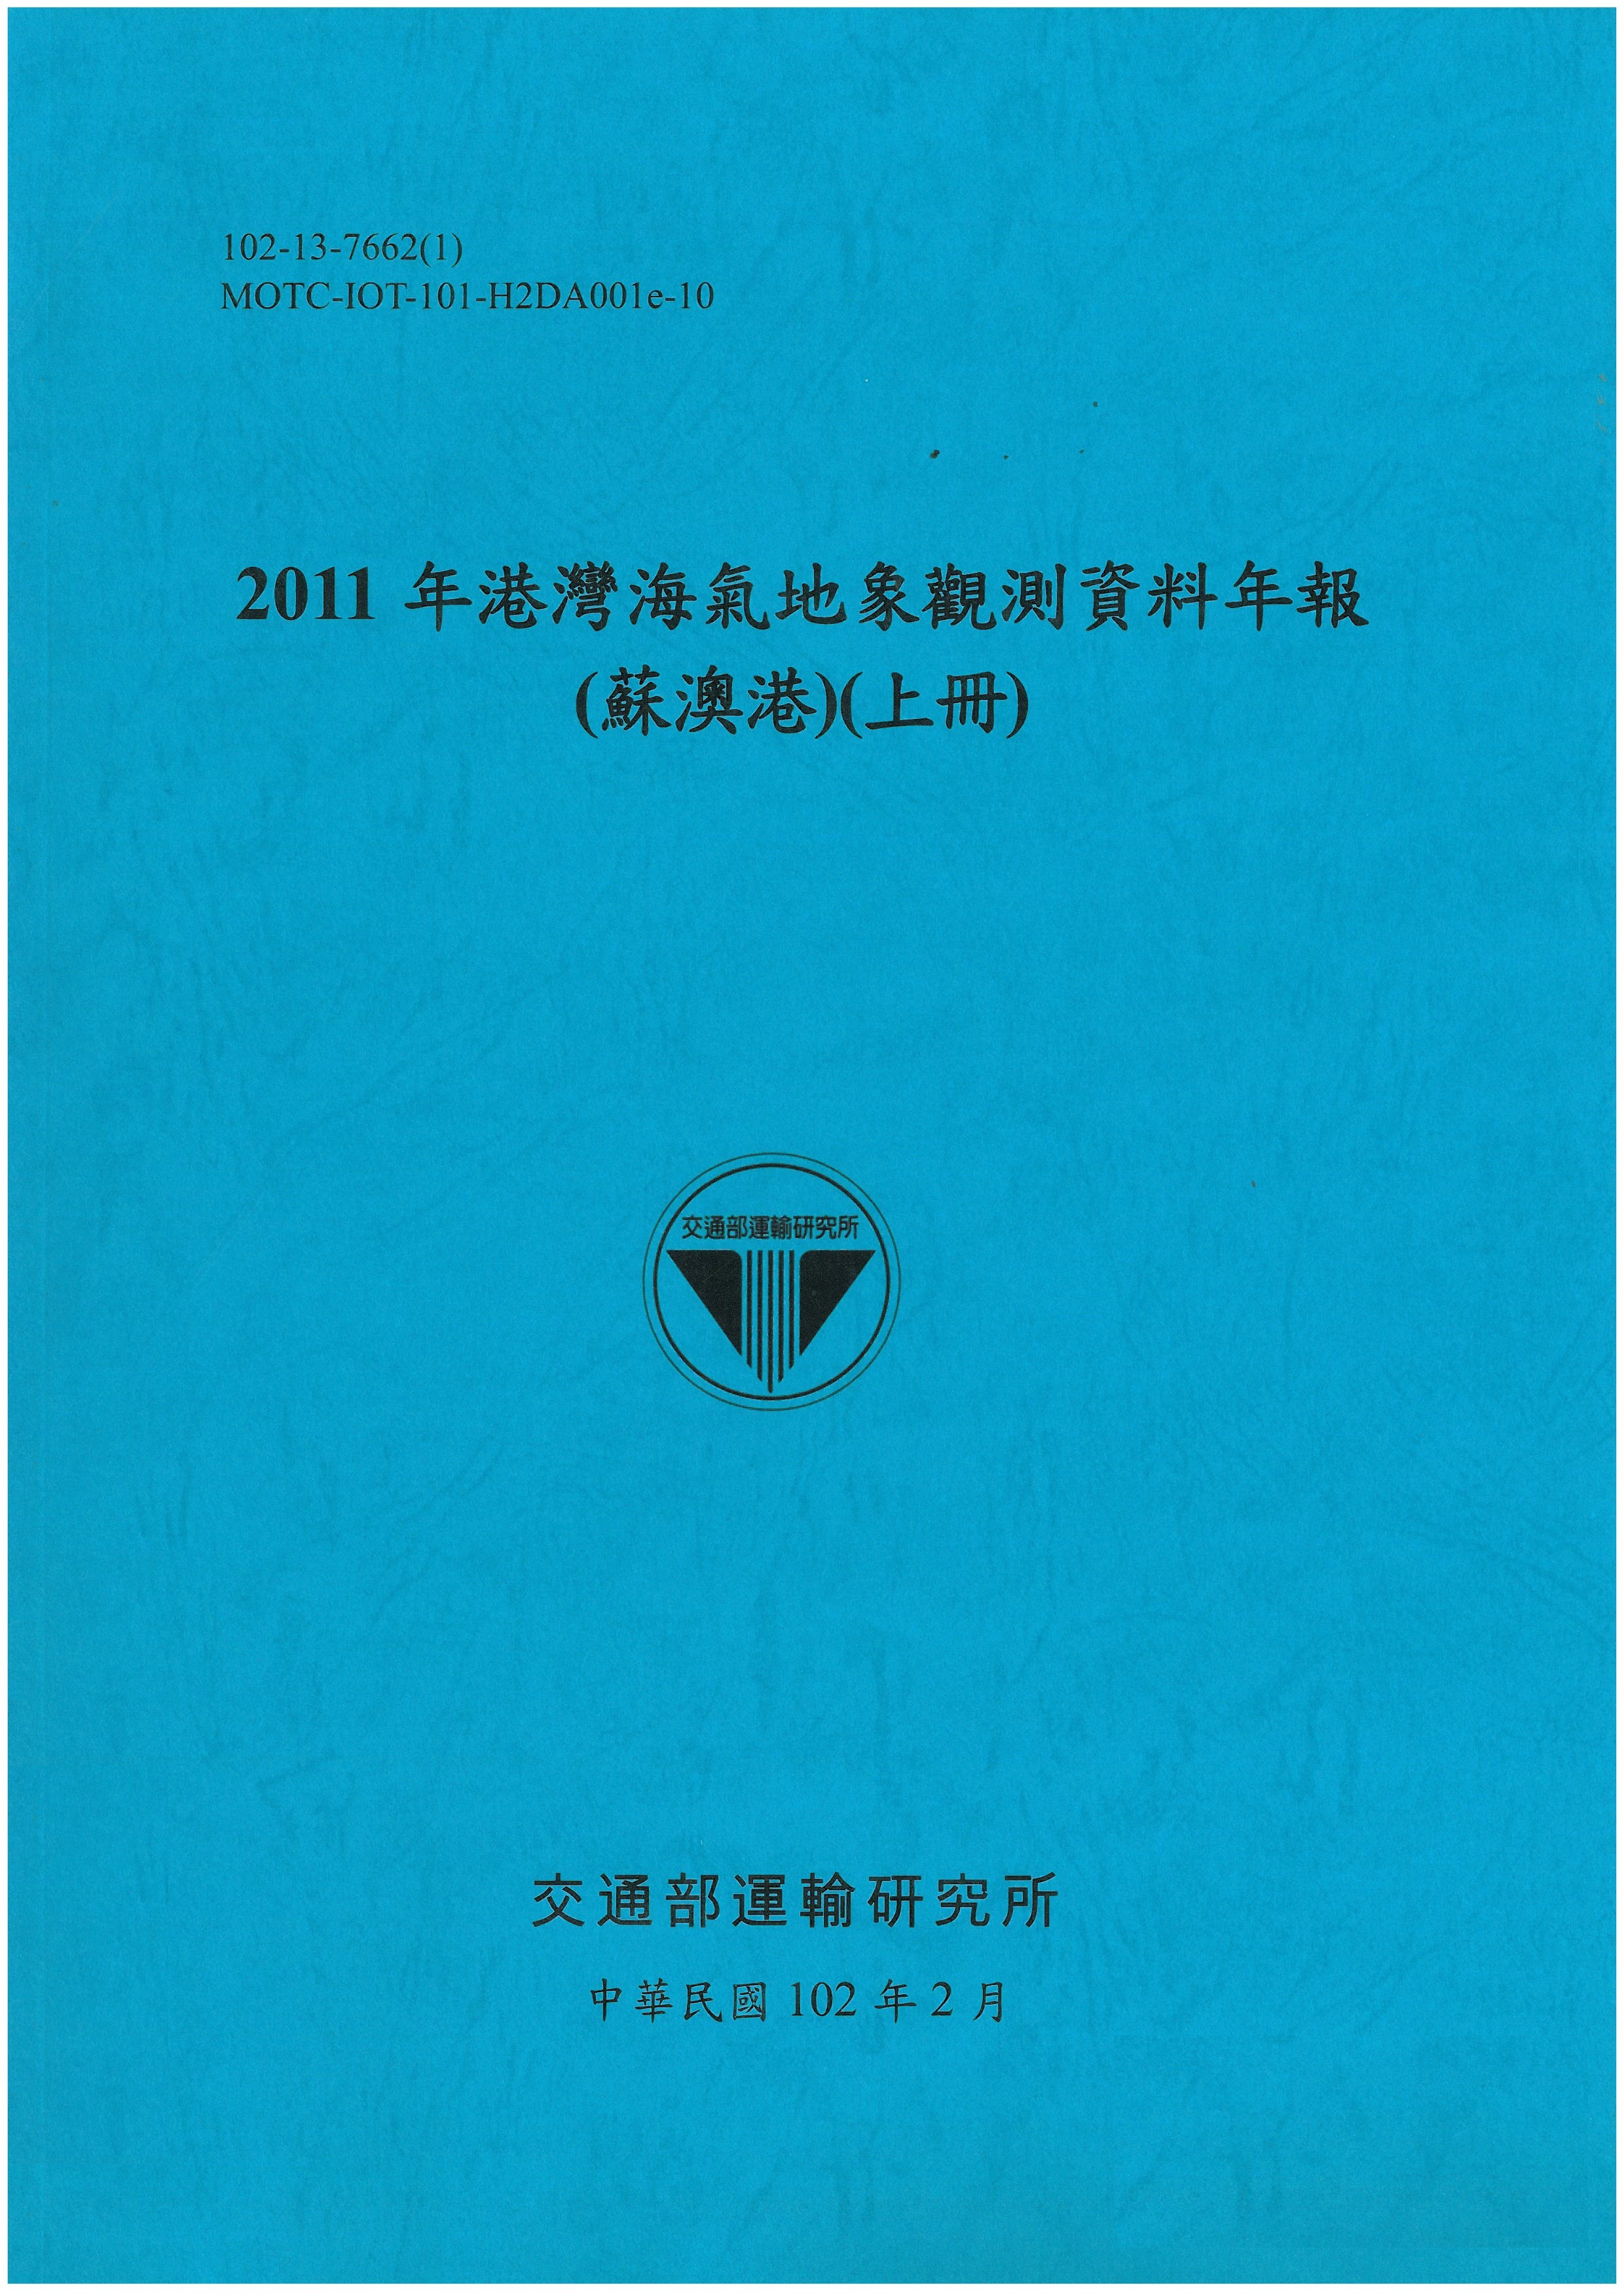 2011年港灣海氣地象觀測資料年報(蘇澳港)(上冊)